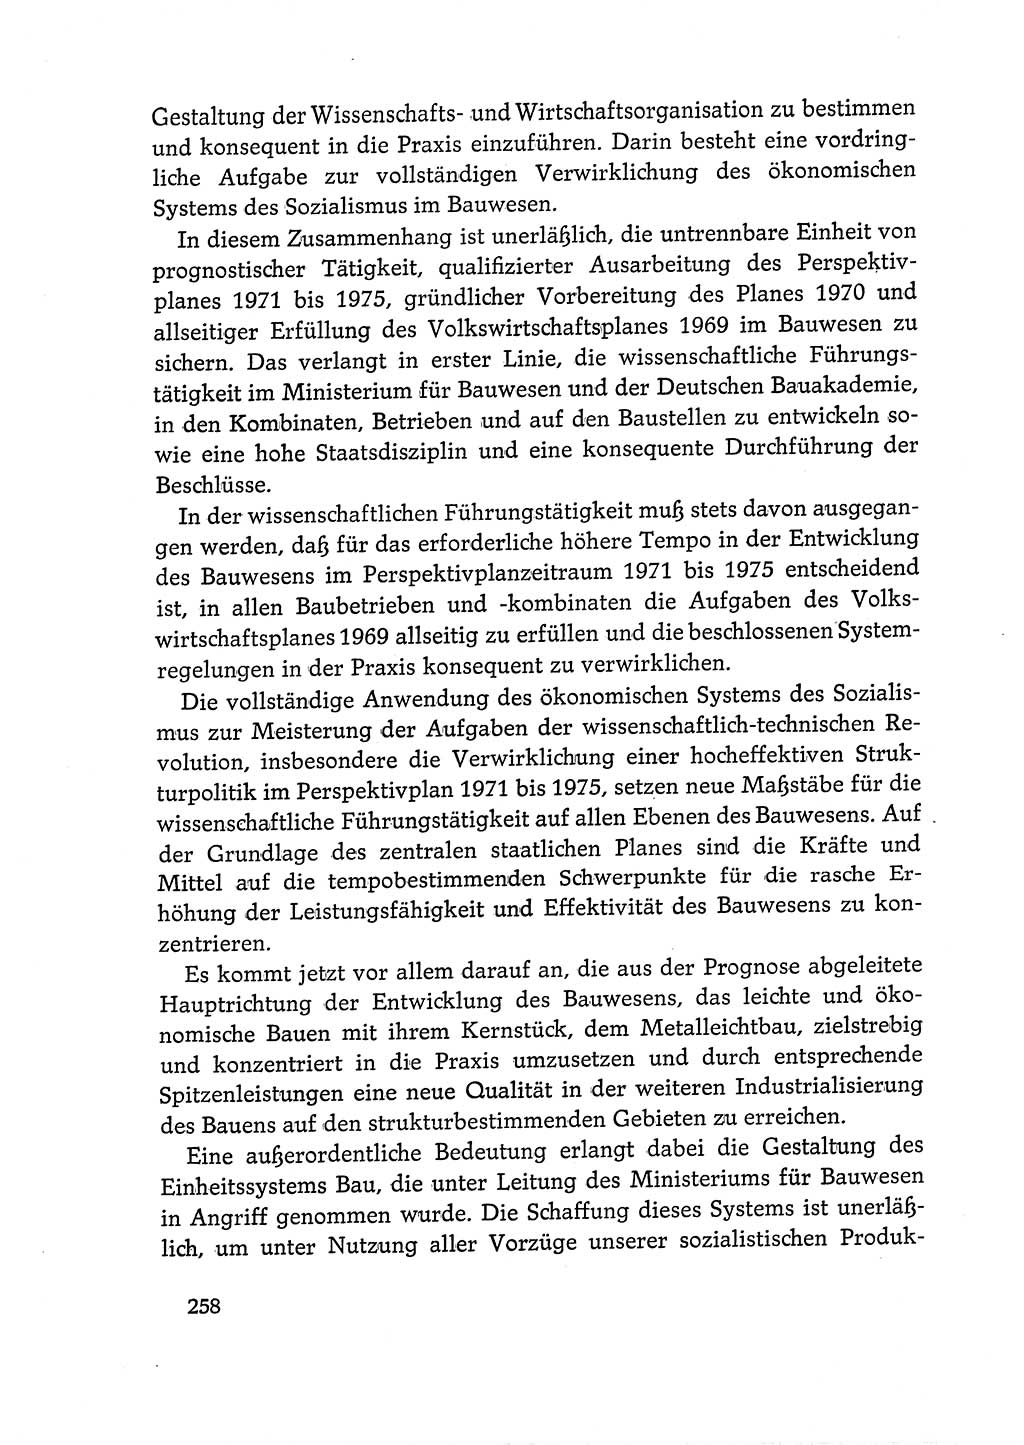 Dokumente der Sozialistischen Einheitspartei Deutschlands (SED) [Deutsche Demokratische Republik (DDR)] 1968-1969, Seite 258 (Dok. SED DDR 1968-1969, S. 258)